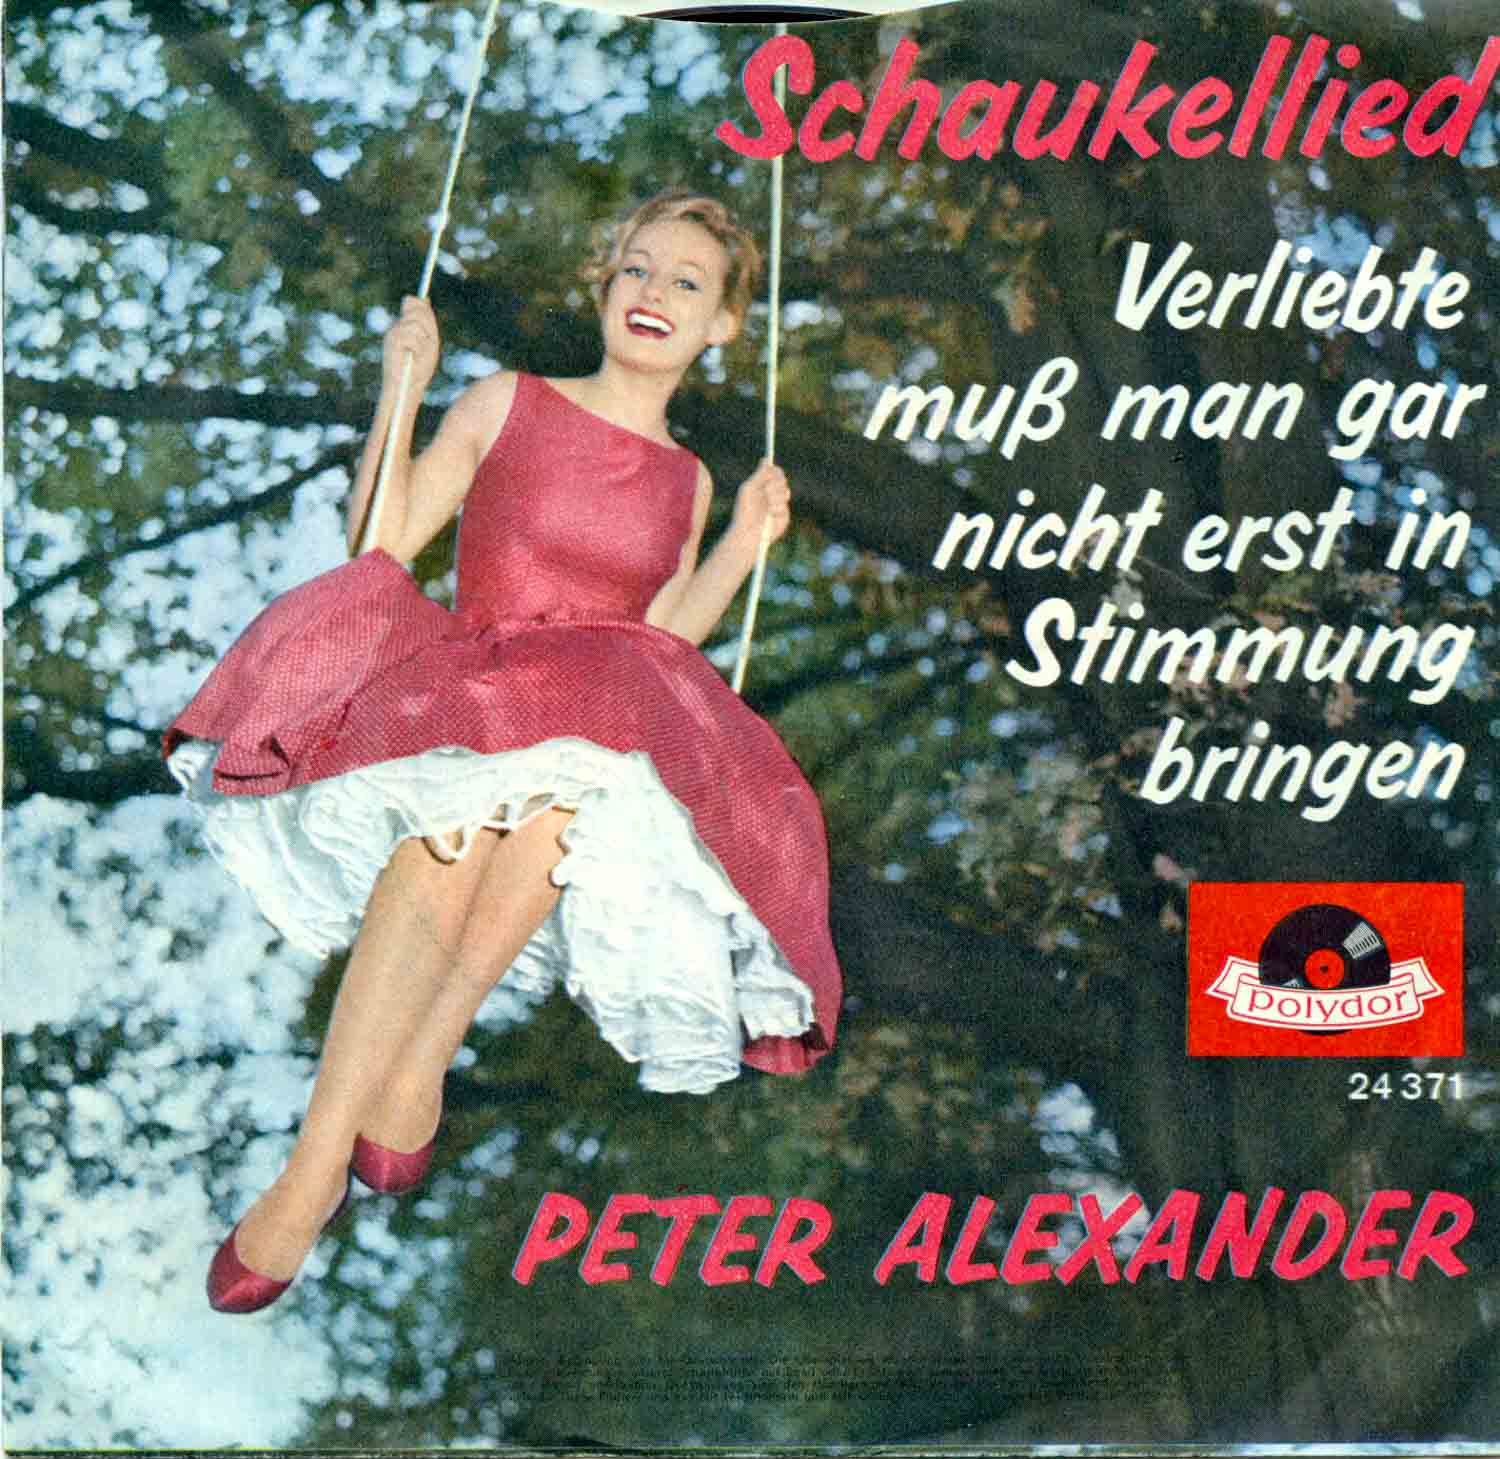 Peter Alexander  Schaukellied / Verliebte muß man gar nicht erst in Stimmung bringen (24 371)  *Single 7'' (Vinyl)*. 